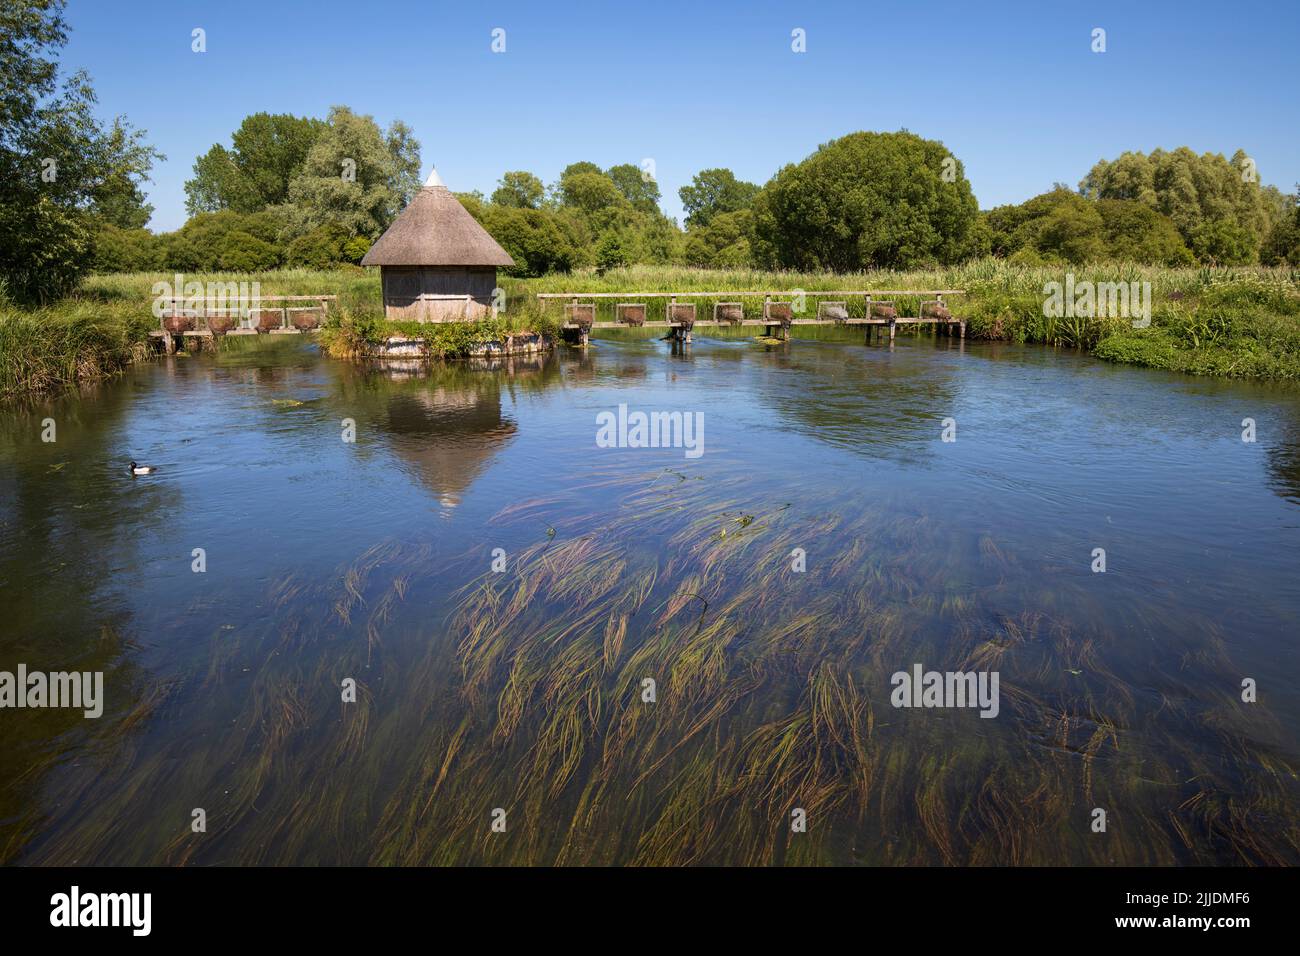 Capanna da pesca con paglia sul fiume Test, Longstock, Stockbridge, Hampshire, Inghilterra, Regno Unito, Europa Foto Stock